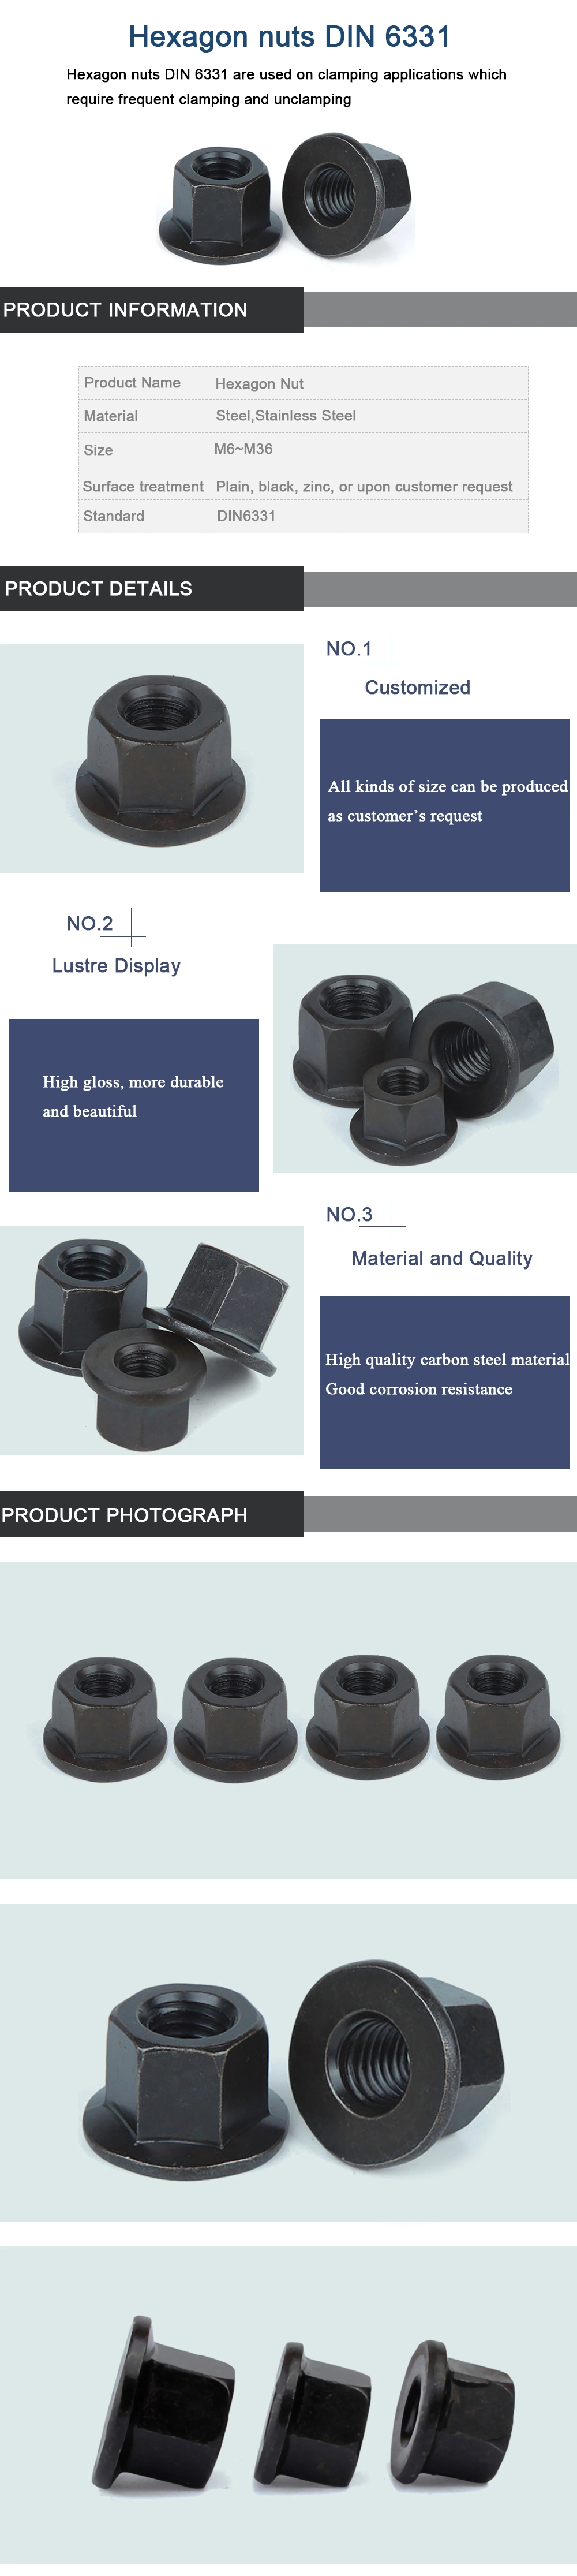 Hardware Bolt Nut Fastener M6 Carbon Steel High Strength Flange Collar Nut DIN6331 for Furniture